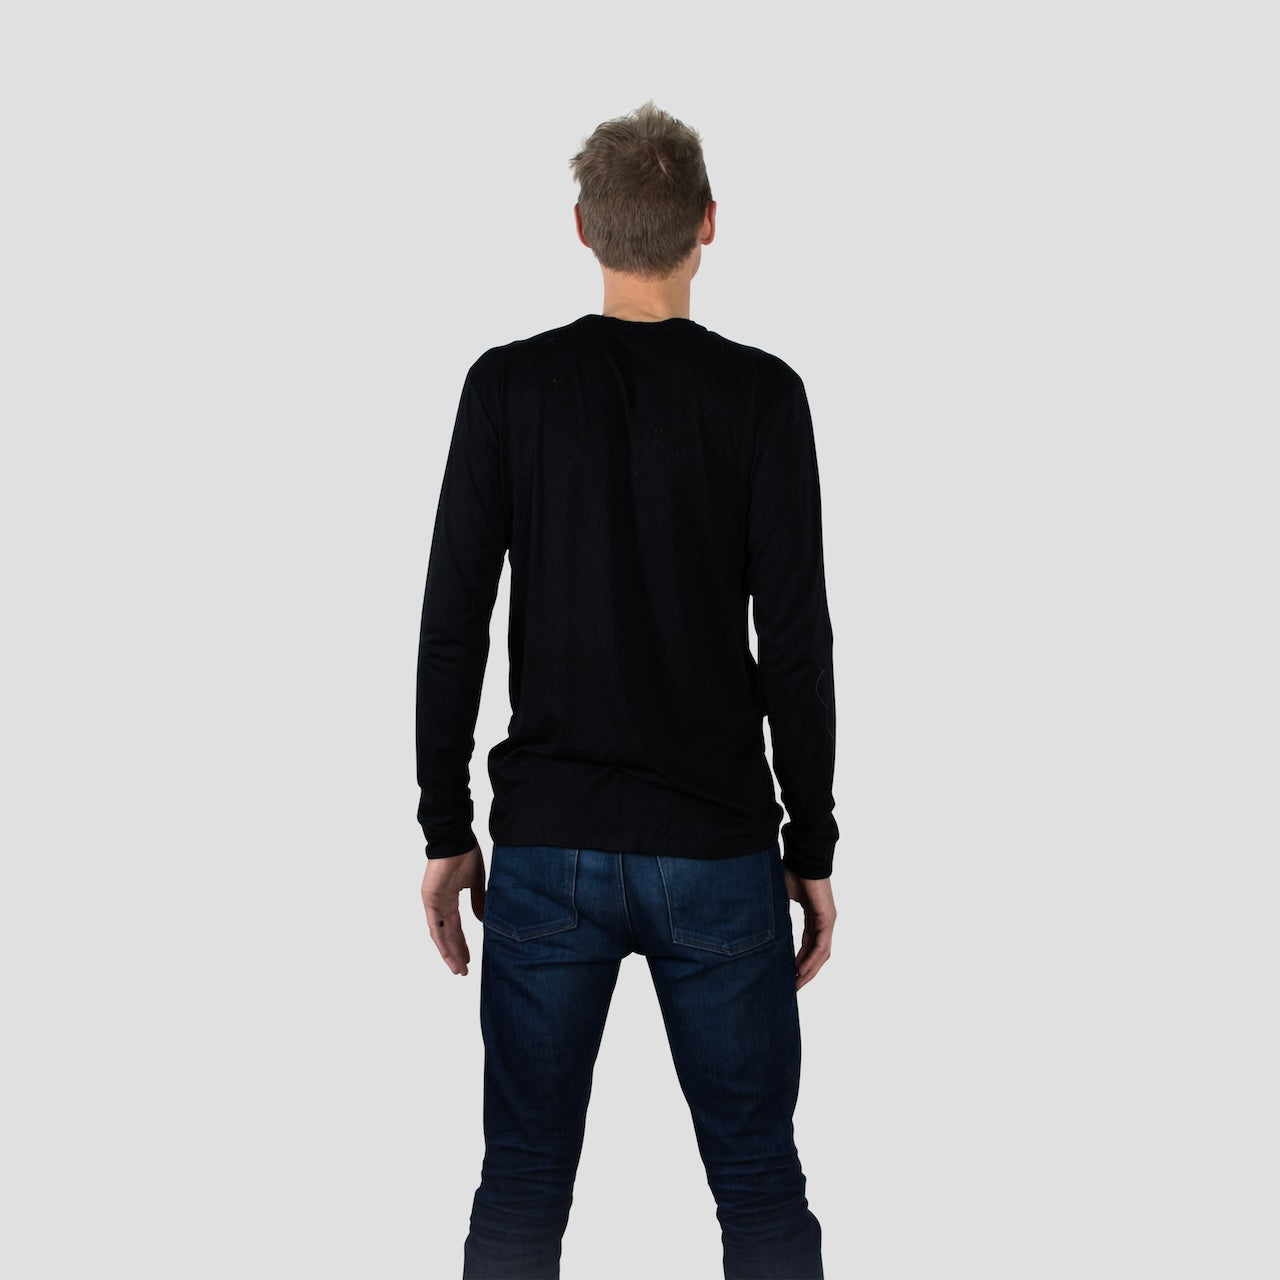 Black Long Sleeve Crew Neck Shirt for Tall Slim Men